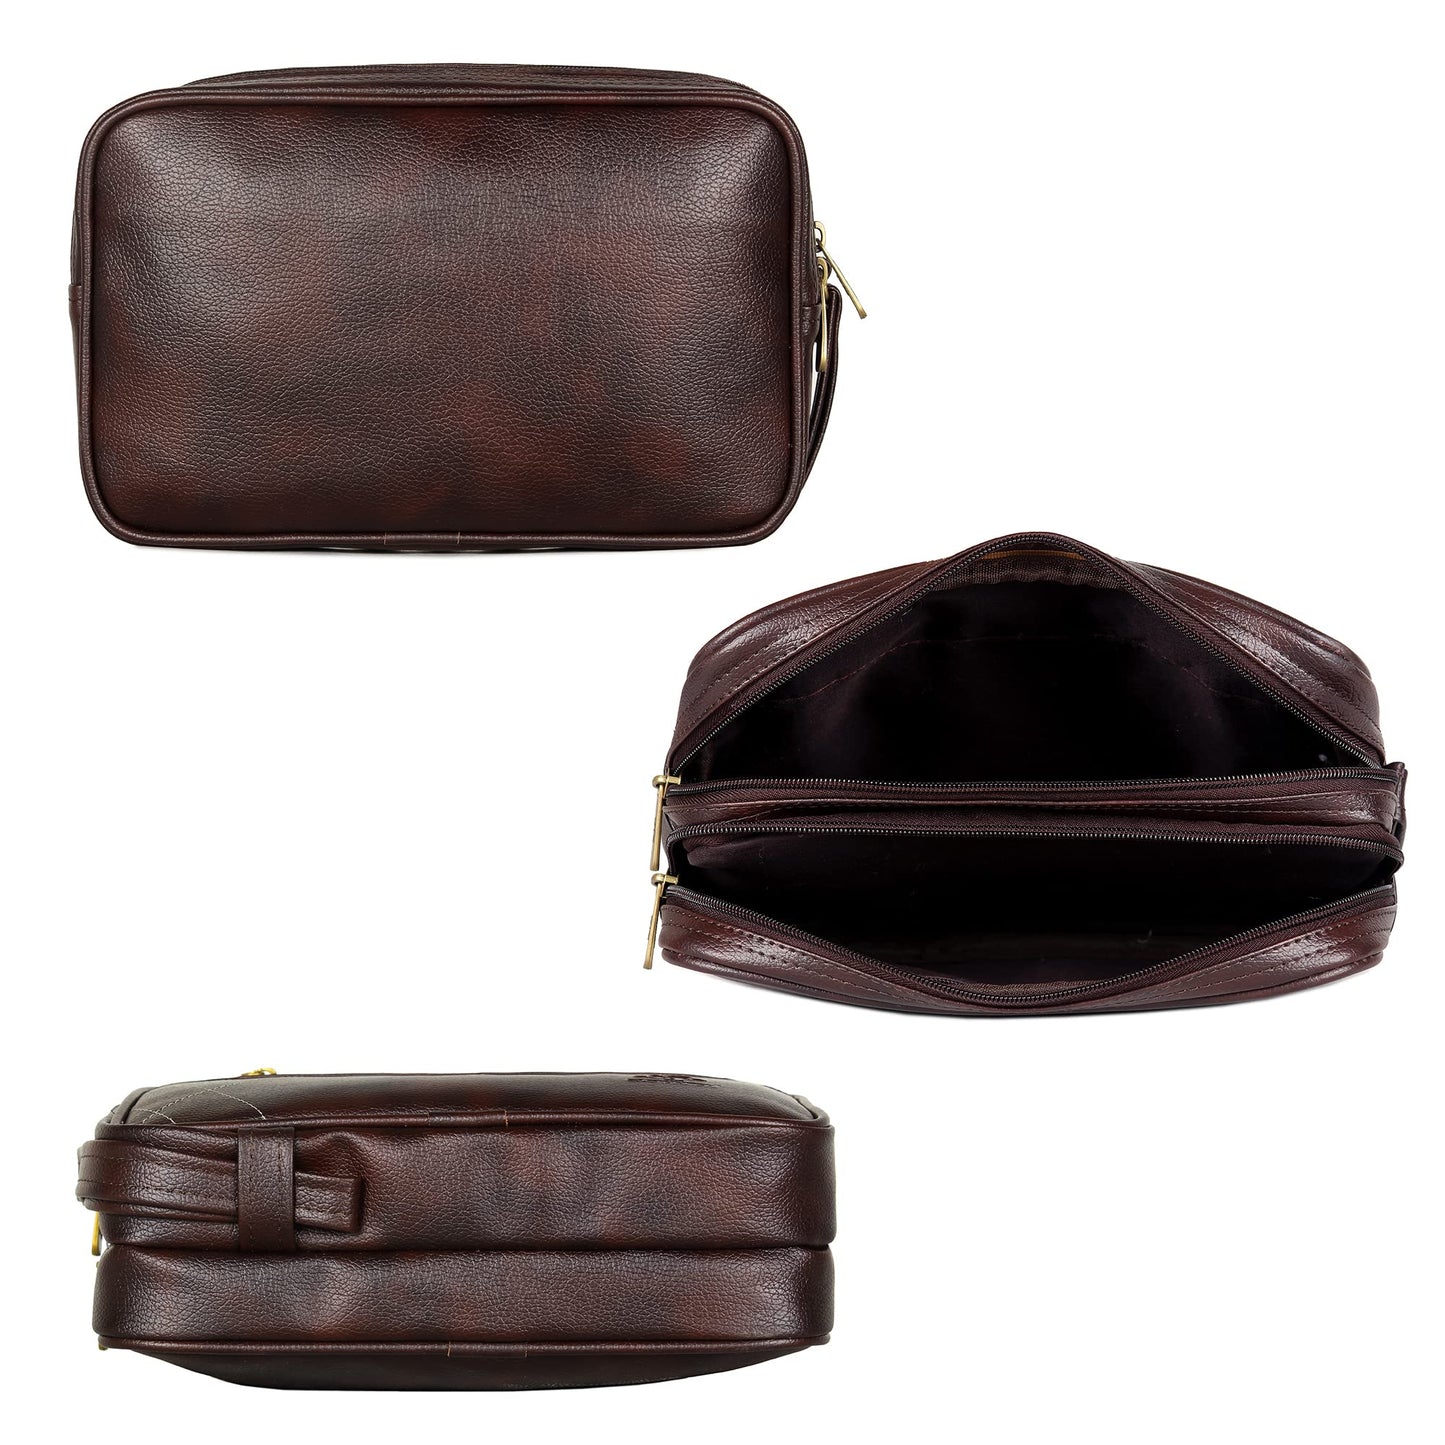 THE CLOWNFISH Unisex Multipurpose Travel Pouch Money Cash Pouch Wrist Handbag Clutch With Wrist Belt (Dark Brown)